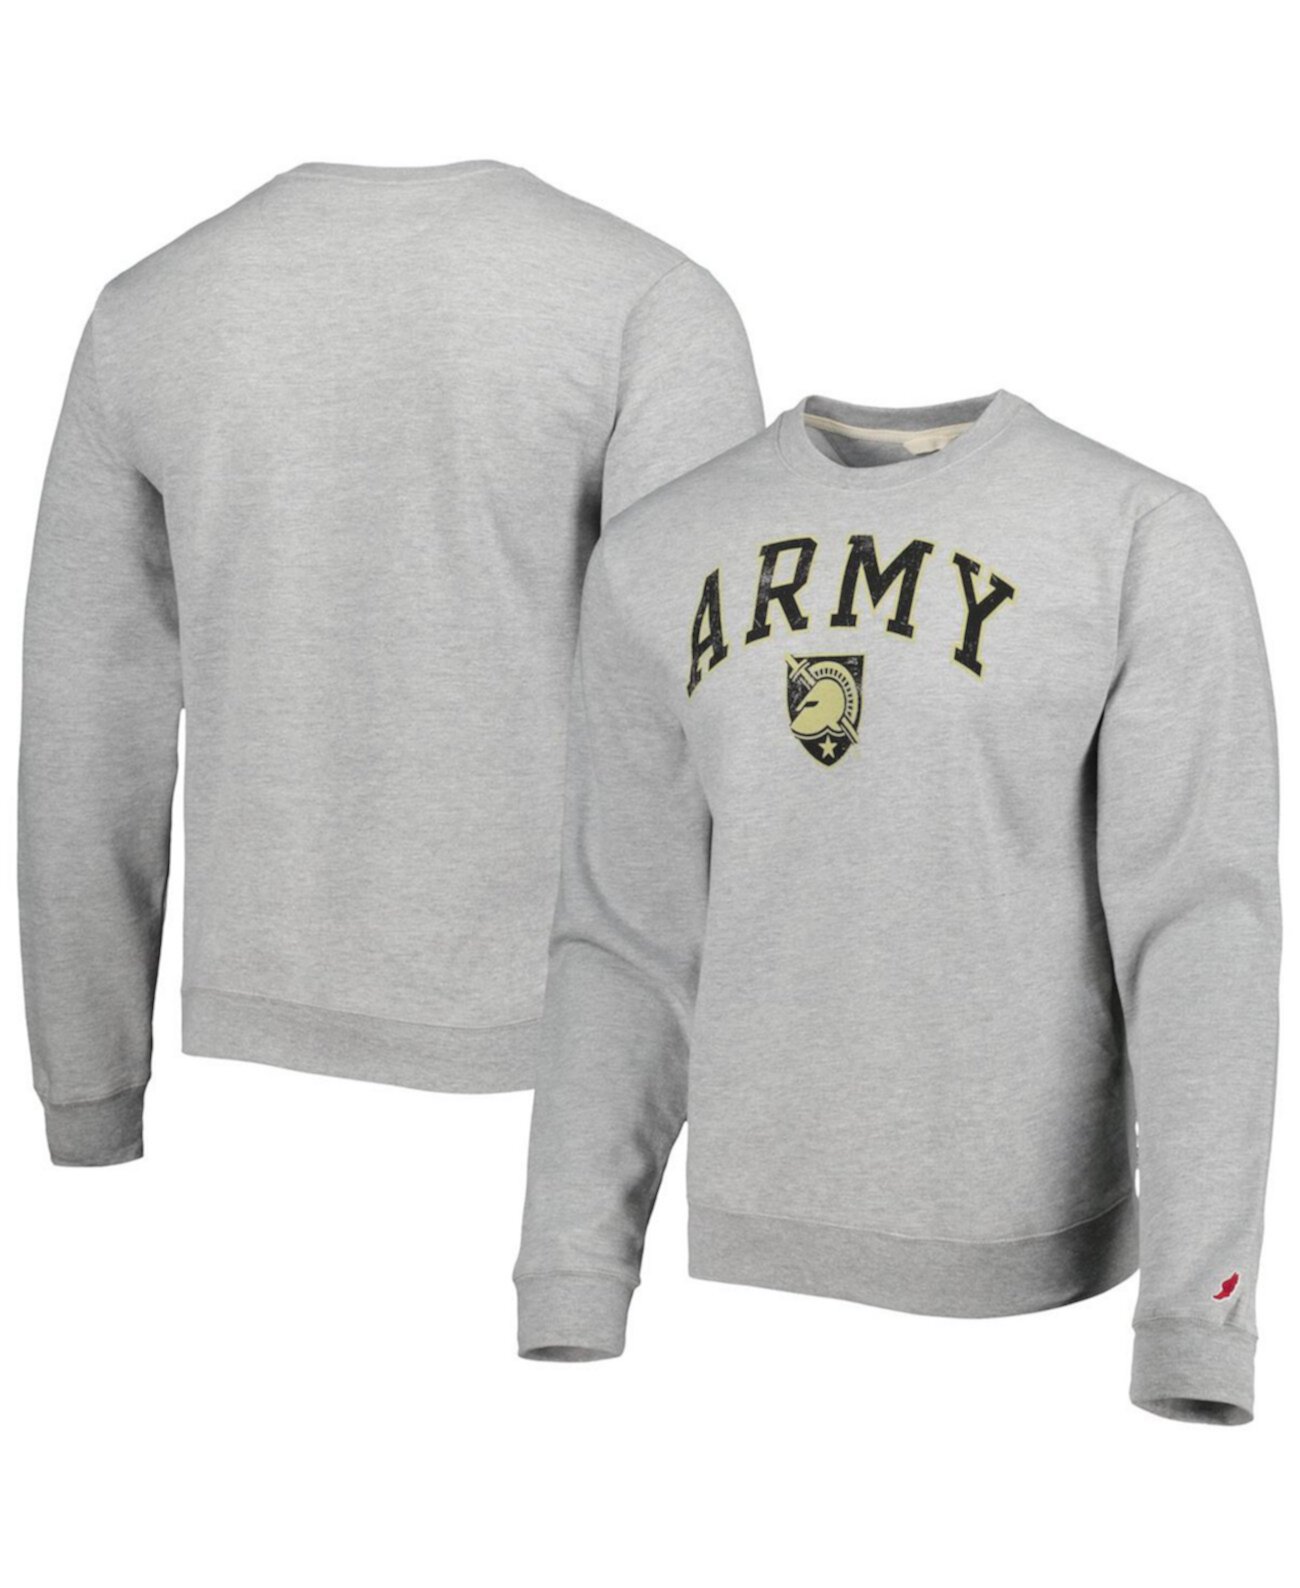 Мужской серый армейский черный флисовый пуловер с капюшоном Knights 1965 Arch Essential League Collegiate Wear